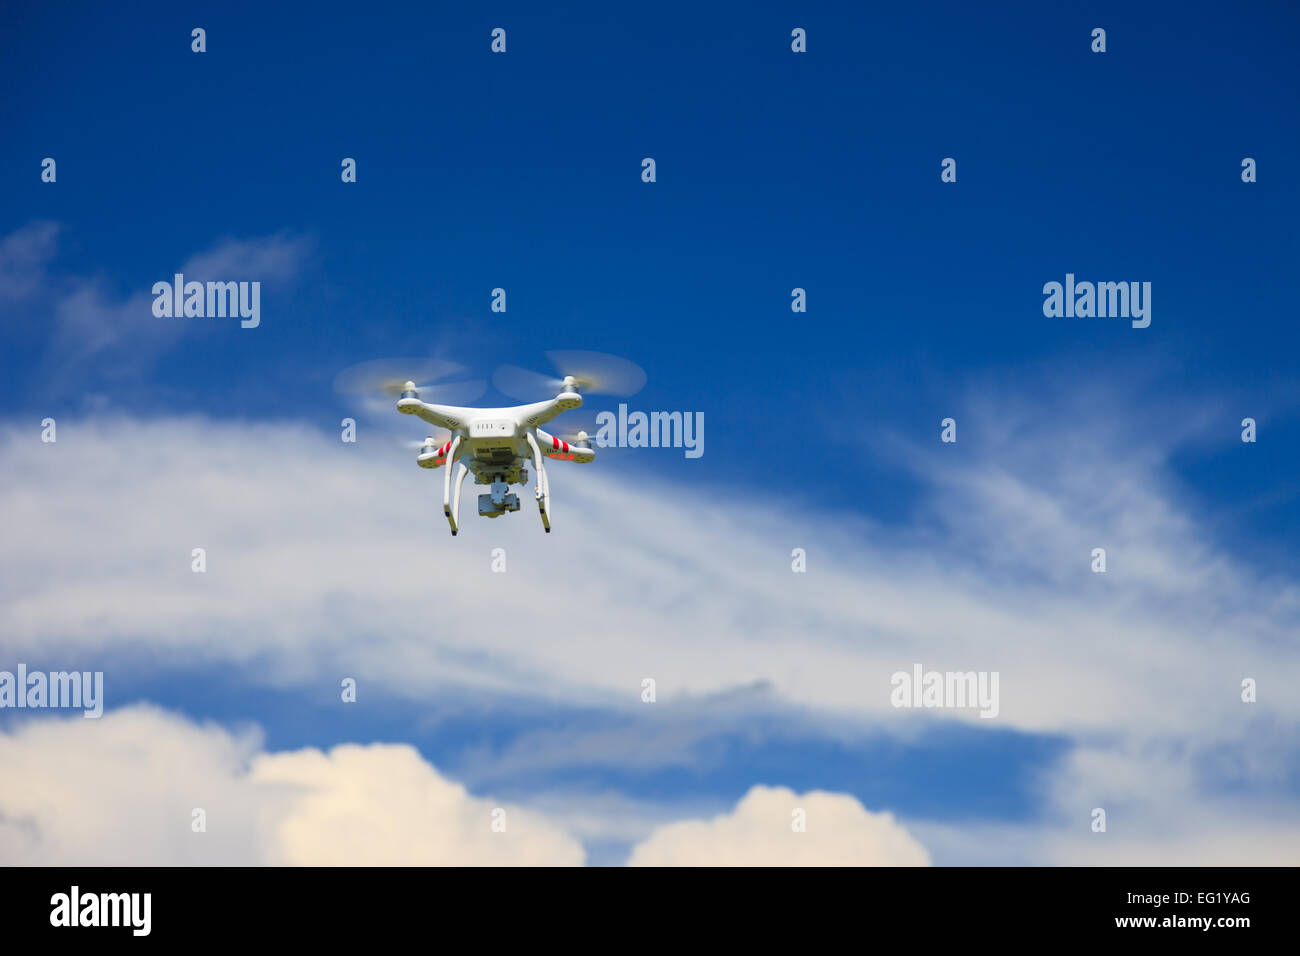 Une vue de dessous d'un drone avec un joint de cardan et de l'appareil photo. Drone, photographie, battant, surveillance Banque D'Images